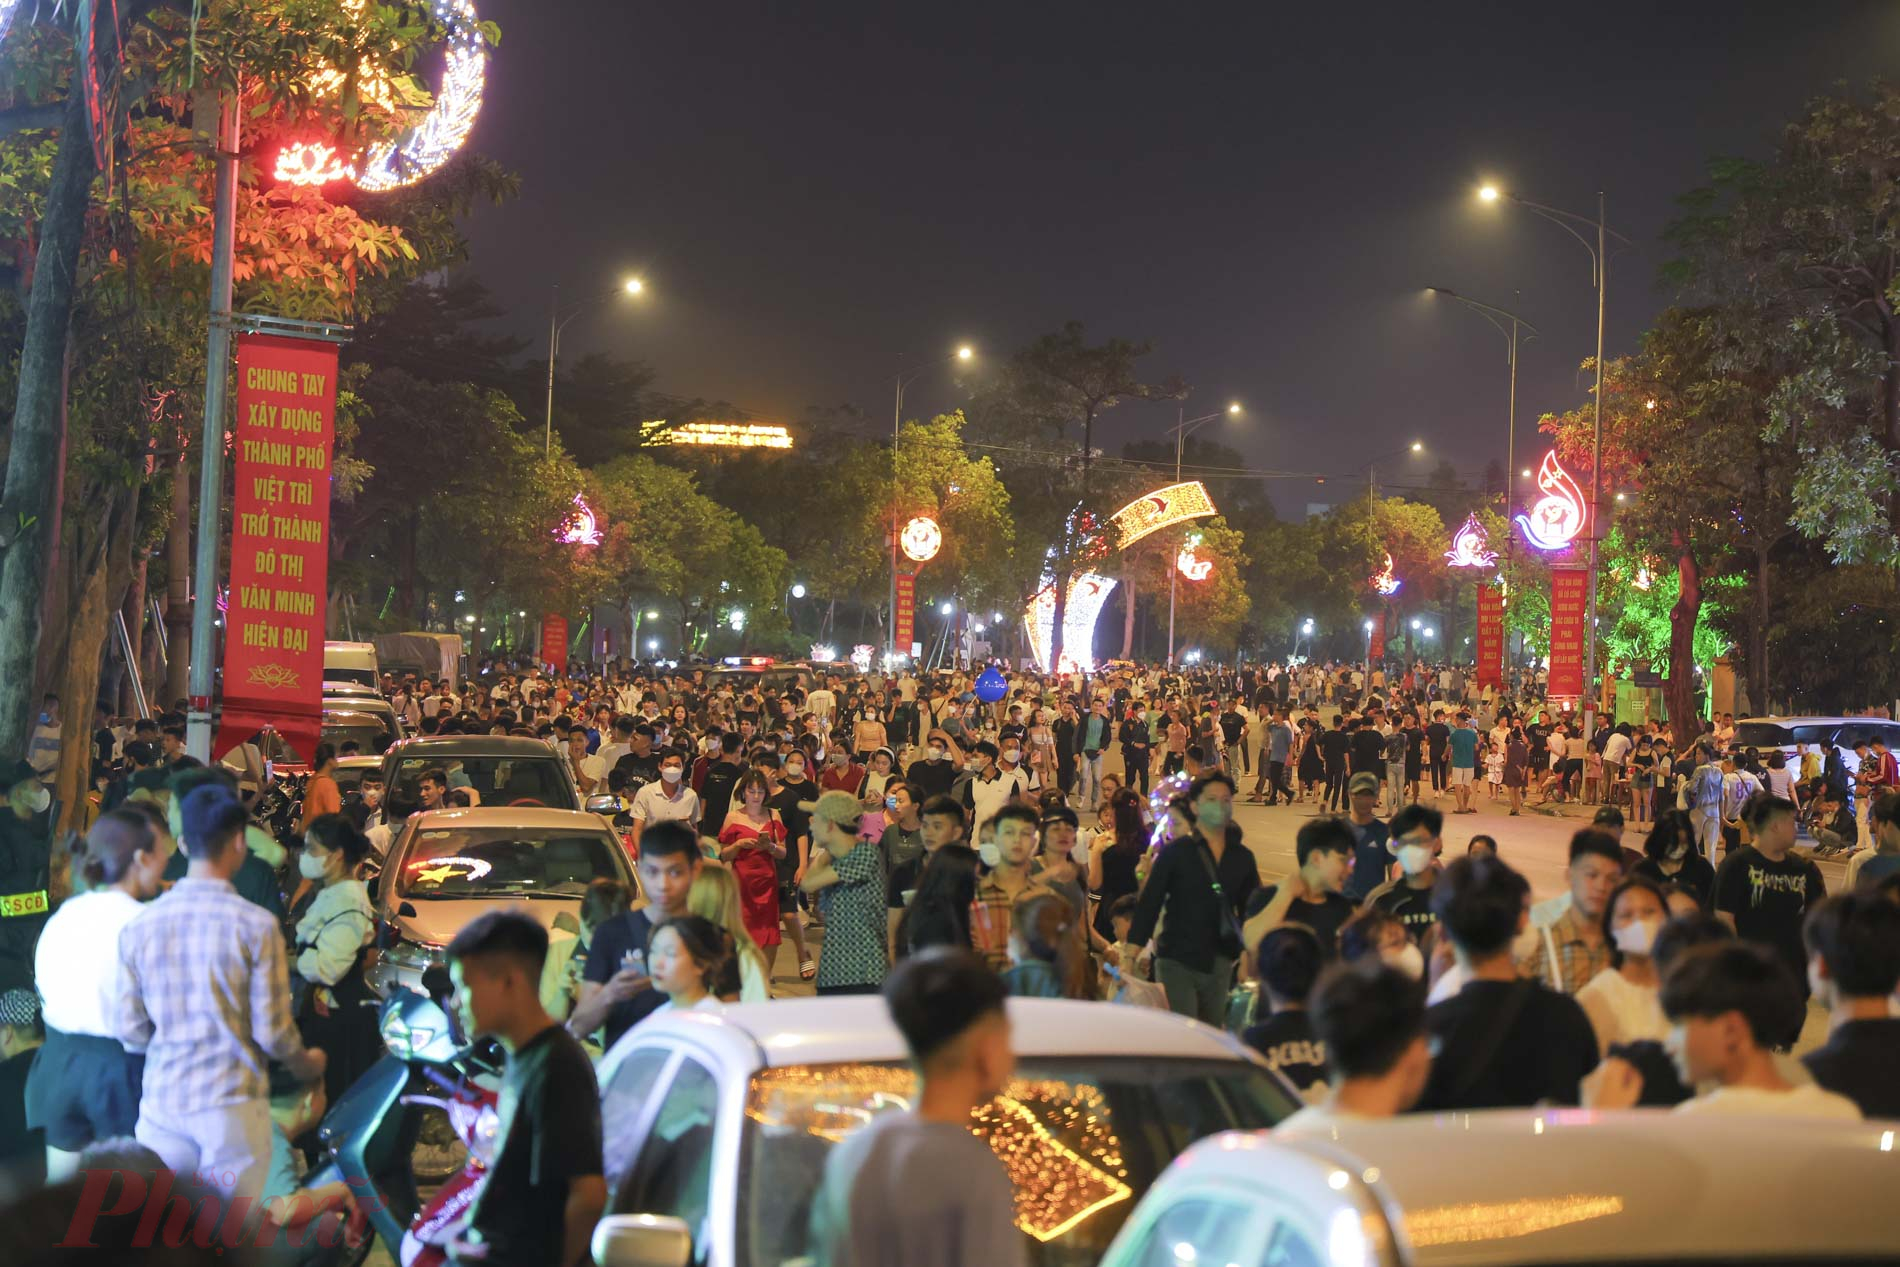 Dù 21g màn pháo hoa mới diễn ra, tuy nhiên  từ 19g30, hàng vạn người đã đổ về công viên Văn Lang để chuẩn bị xem màn pháo hoa, gây ùn tắc giao thông nghiêm trọng.